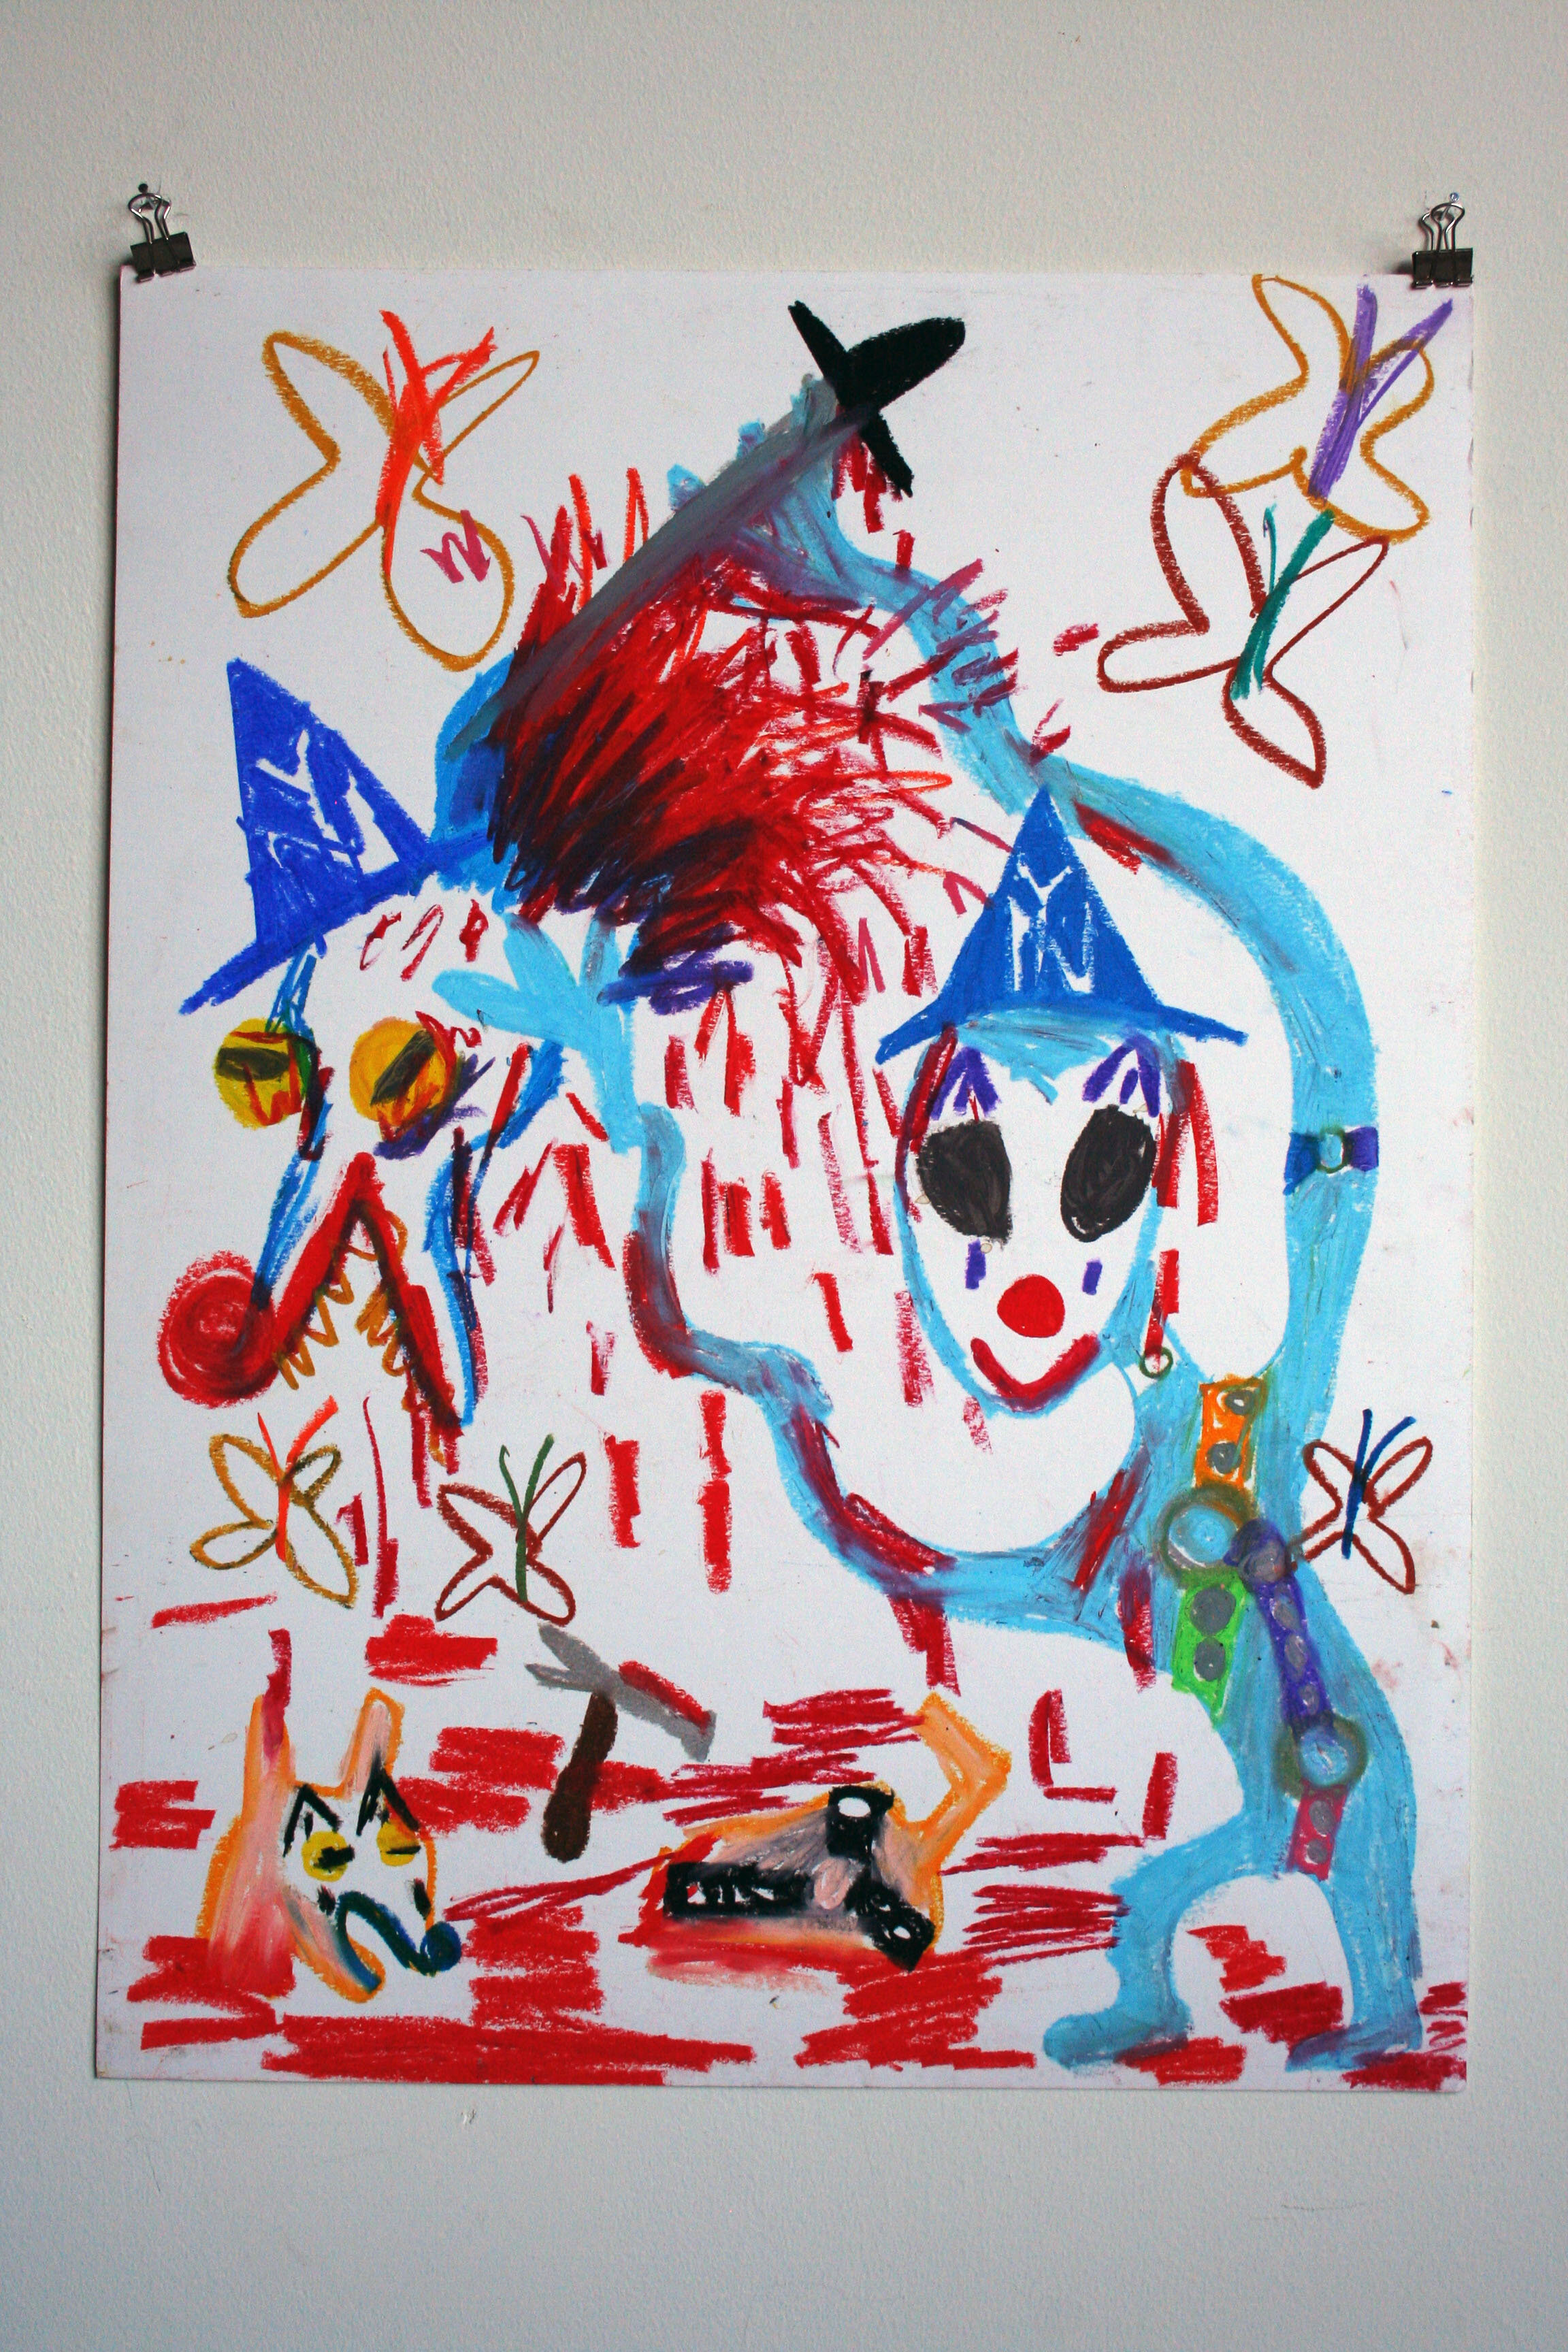   Bondage Alien Mess,  2014  24 x 18 inches (60.96 x 45.72 cm.)  Oil pastel on paper 